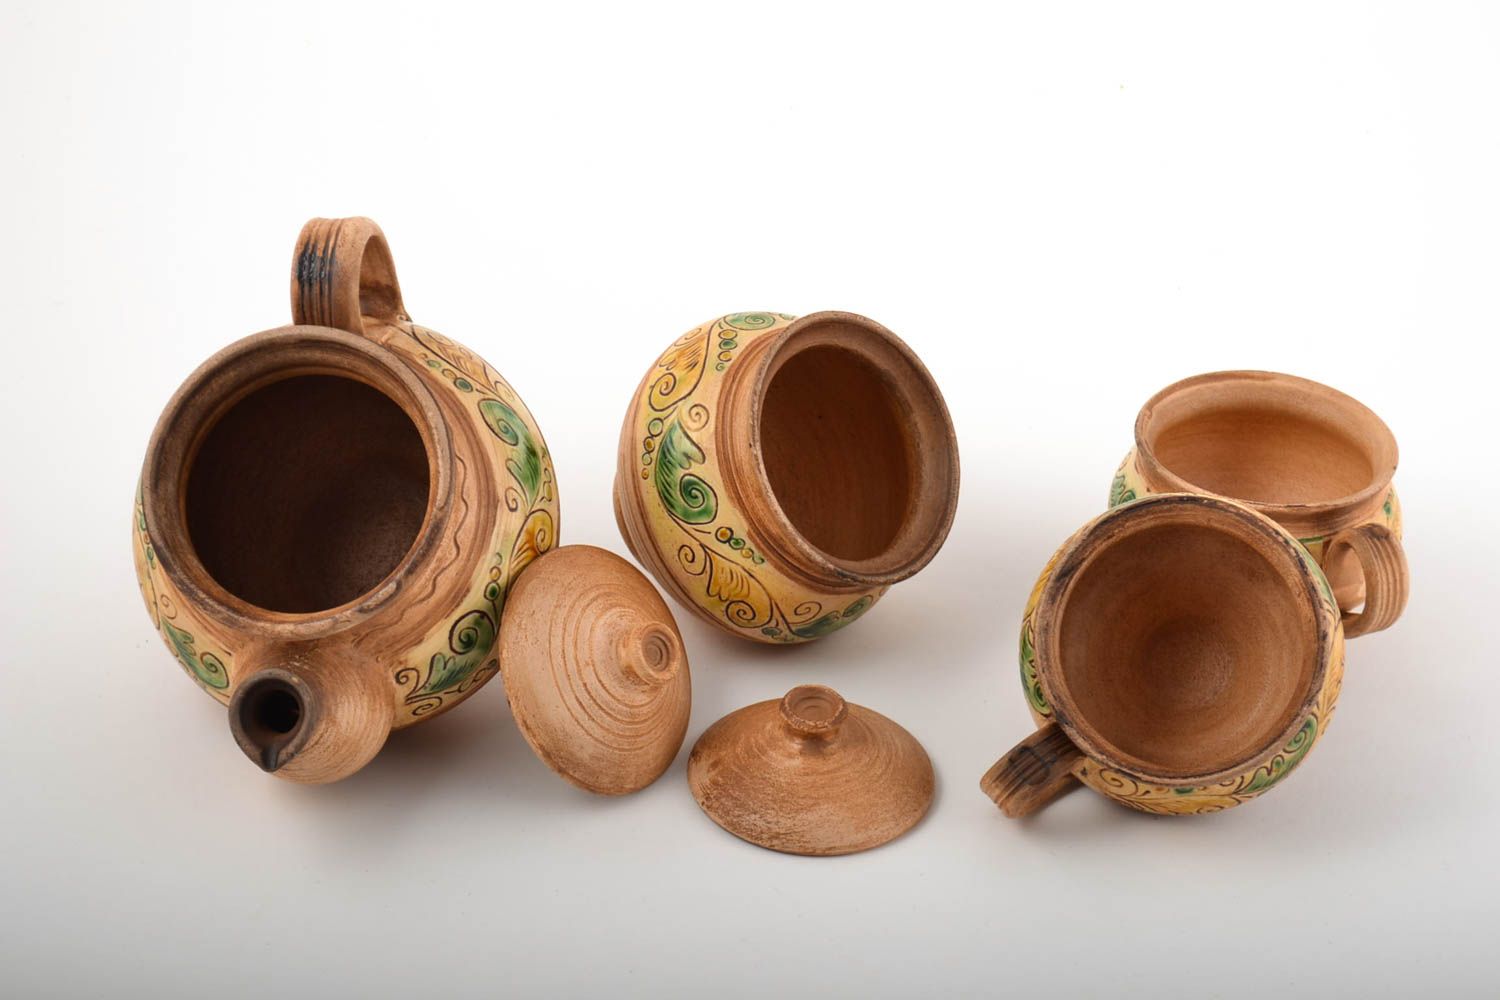 Juego de vasija artesanal tetera de cerámica tarro de azucar y 2 tazas de barro foto 5